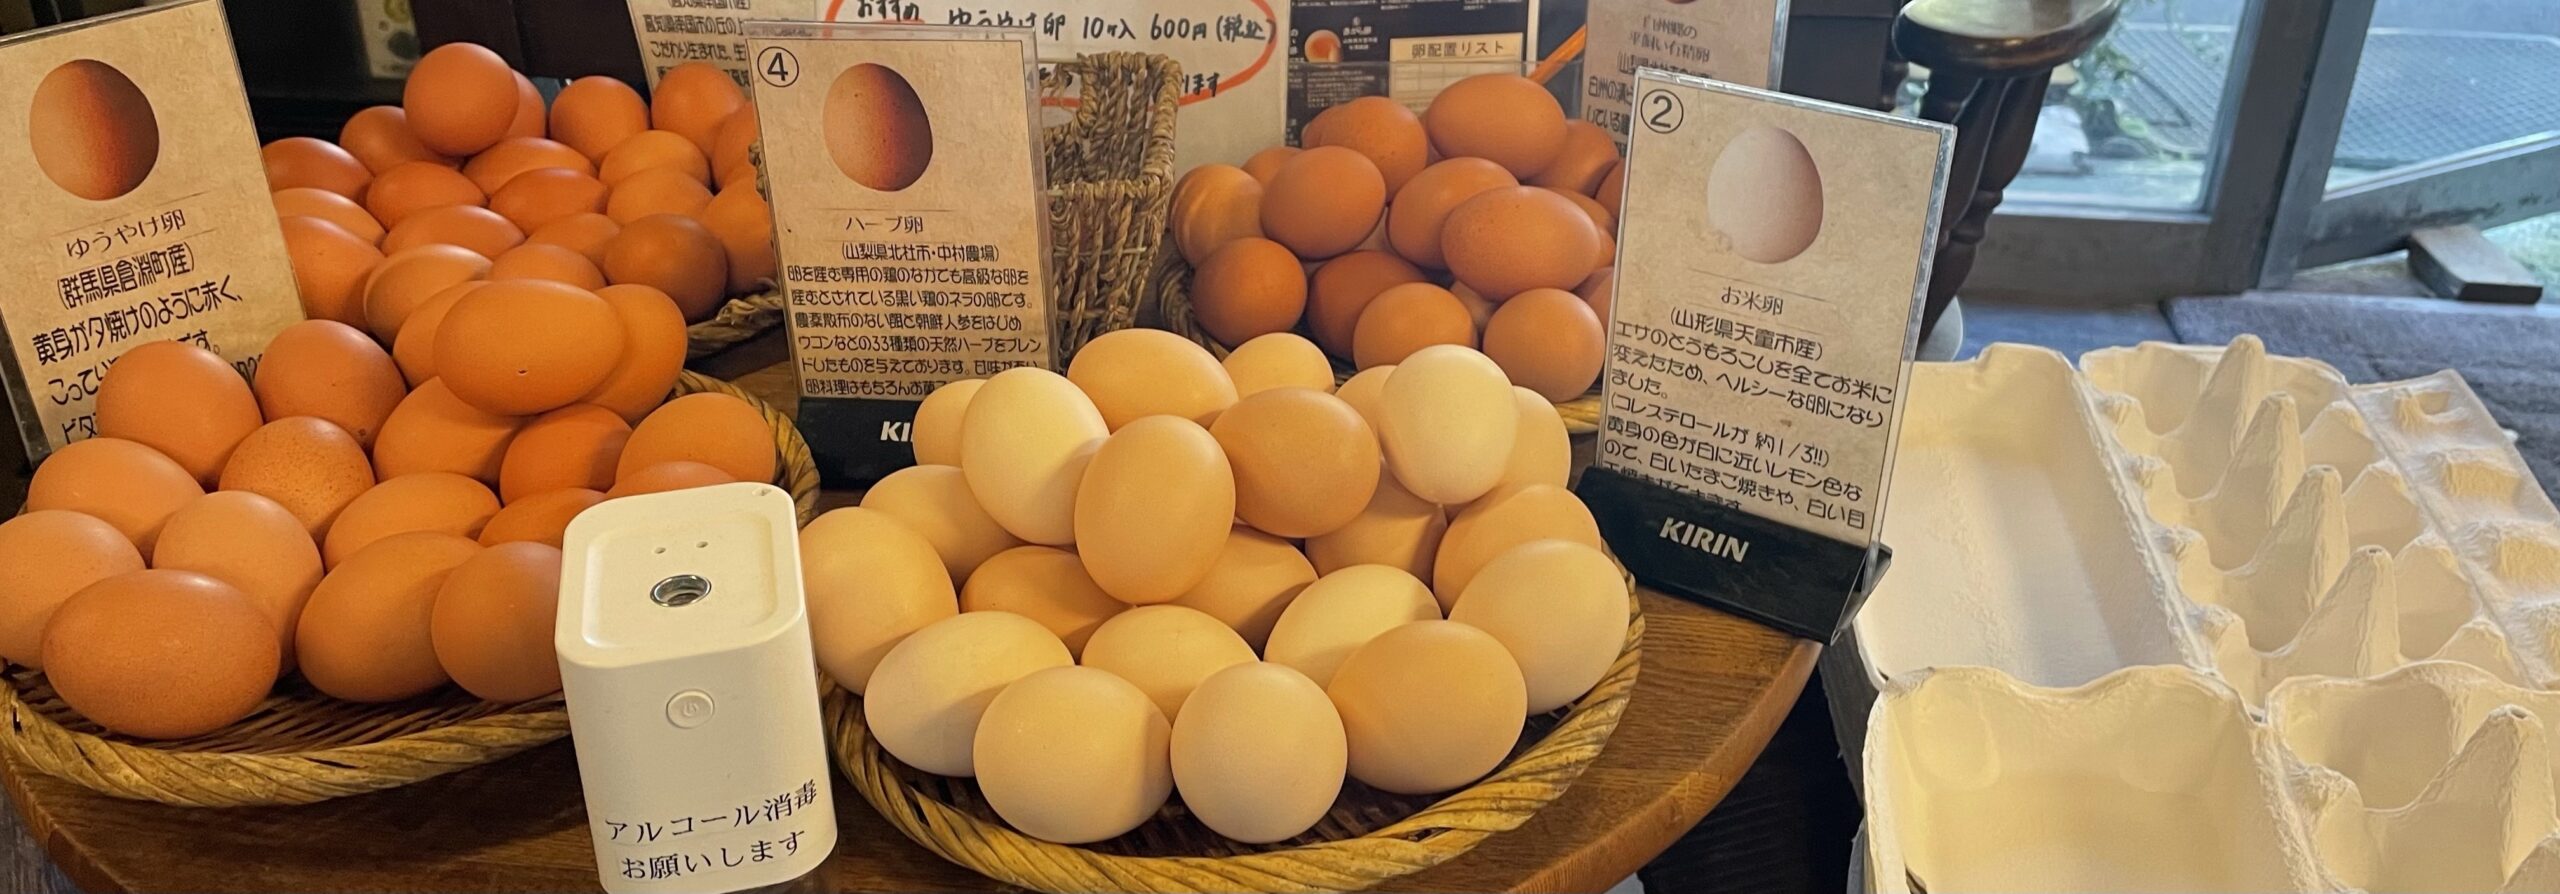 喜三郎農場 東京都内でこだわり卵が食べ放題 人気の 卵かけご飯 は必見 ふみブログ